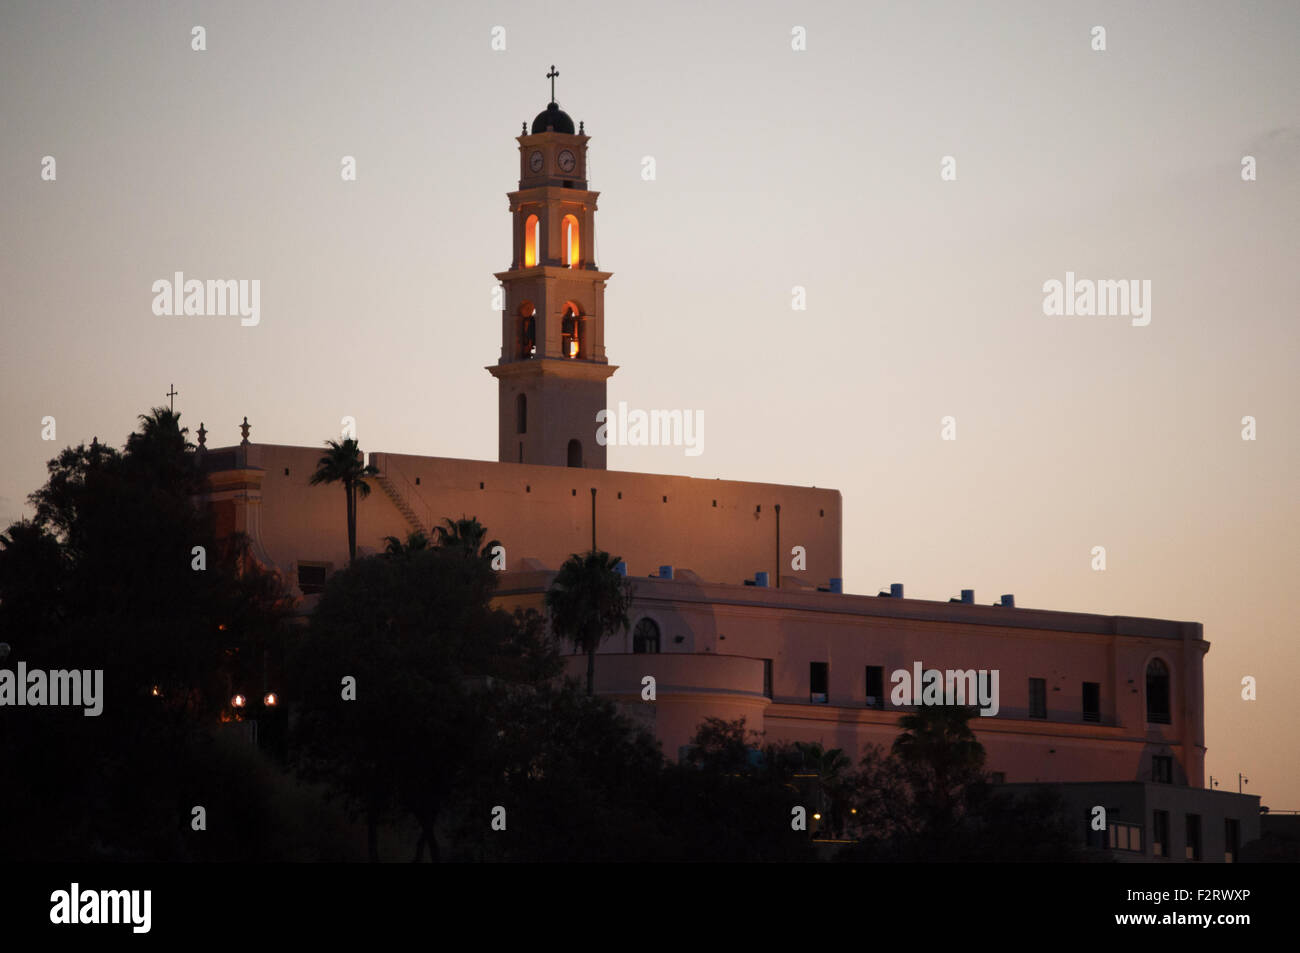 Journée d'été, le coucher du soleil sur le clocher de l'église Saint Pierre, la vieille ville de Jaffa, Haifa, Yaffo, Tel Aviv, Israël Banque D'Images